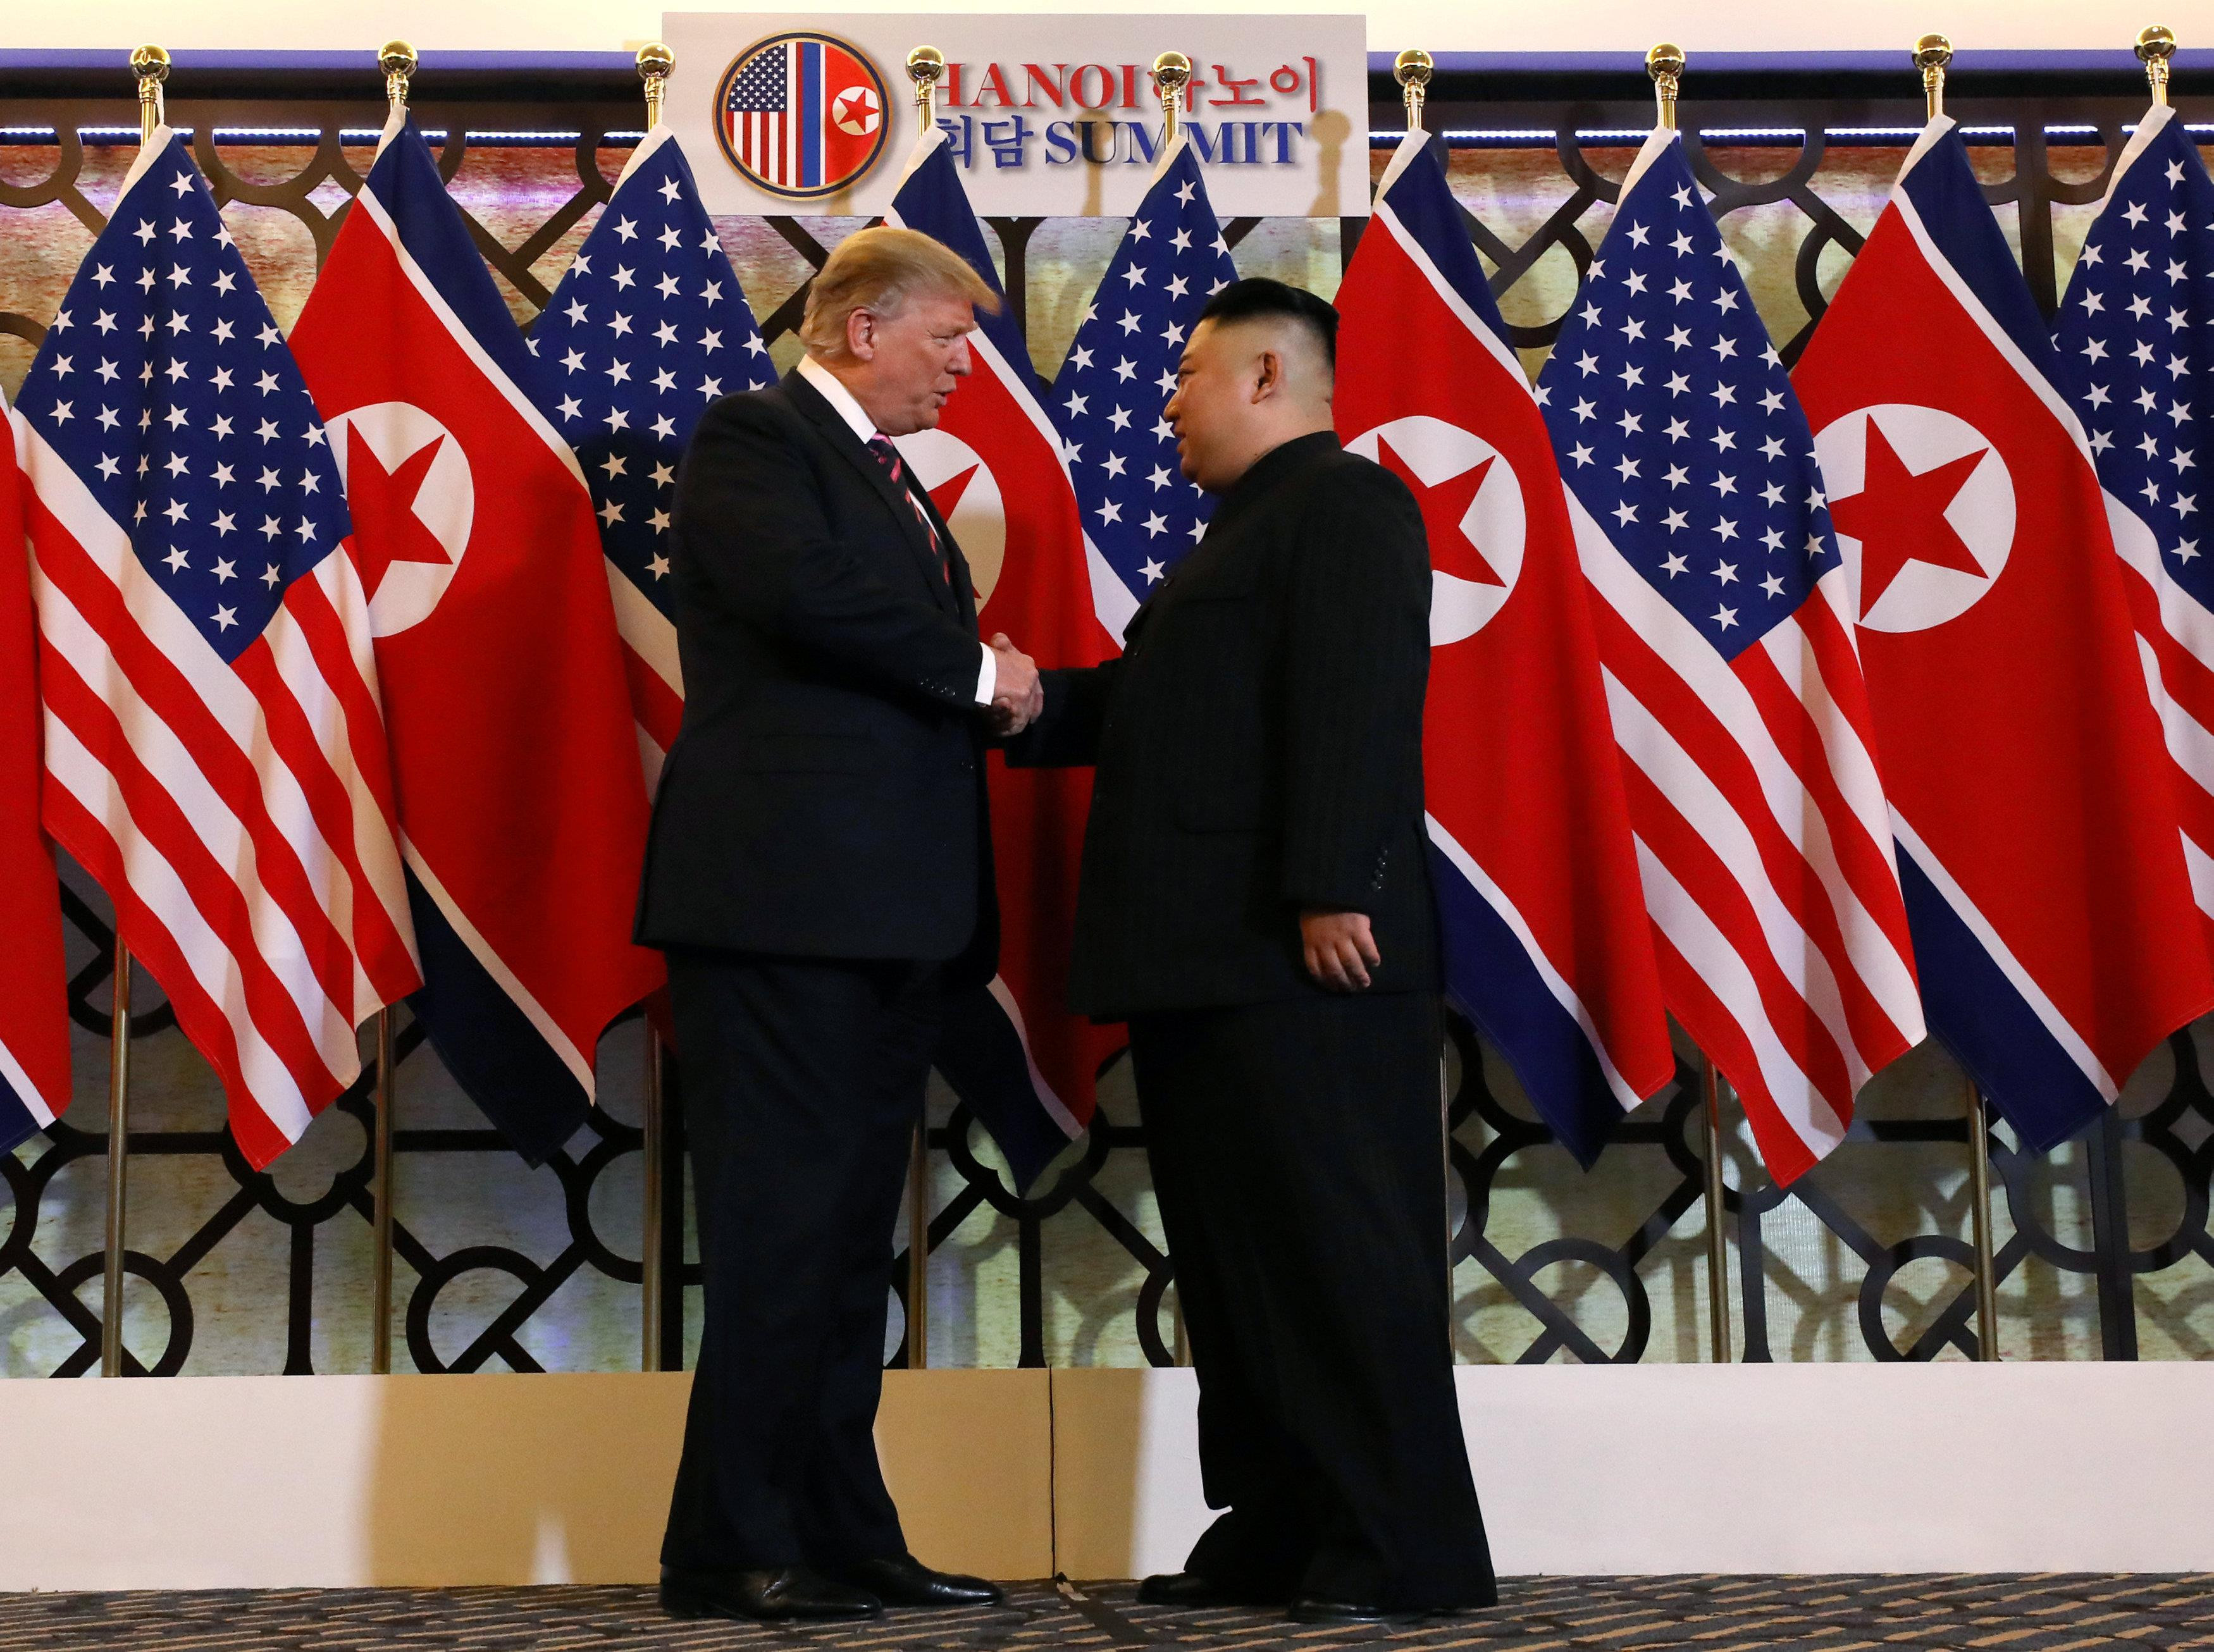 Tổng thống Hoa Kỳ Donald Trump và nhà lãnh đạo Triều Tiên Kim Jong Un bắt tay trước cuộc gặp riêng tại Hội nghị thượng đỉnh Mỹ-Triều lần thứ hai, khách sạn Metropole ở Hà Nội, Việt Nam ngày 27 tháng 2 năm 2019